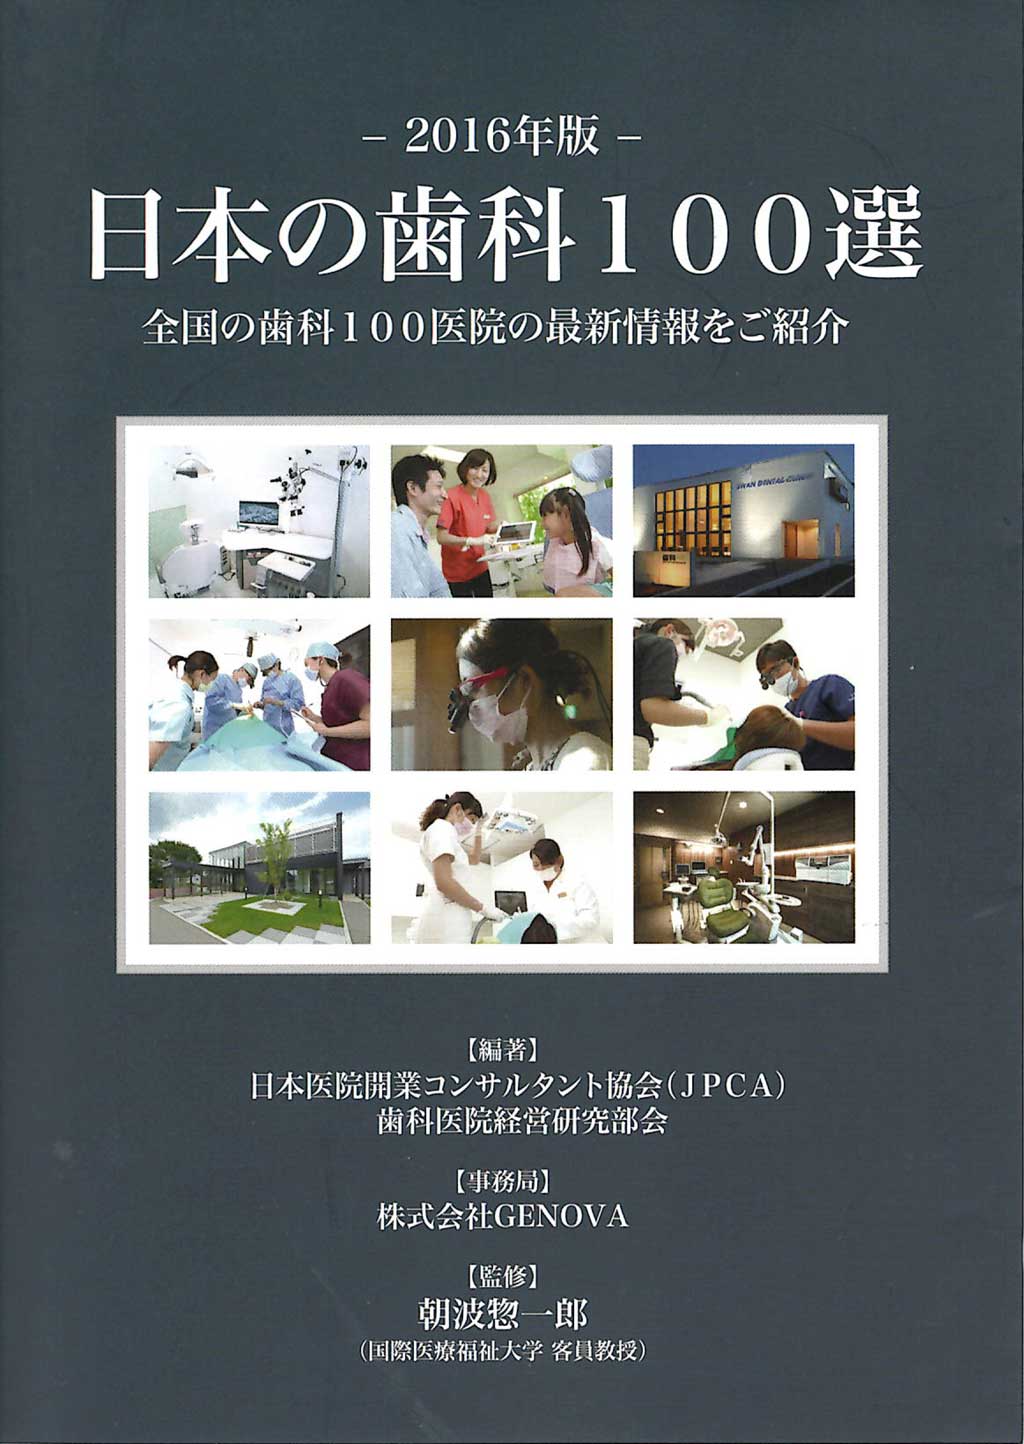 専門書籍「日本の歯科100選 2016年版」